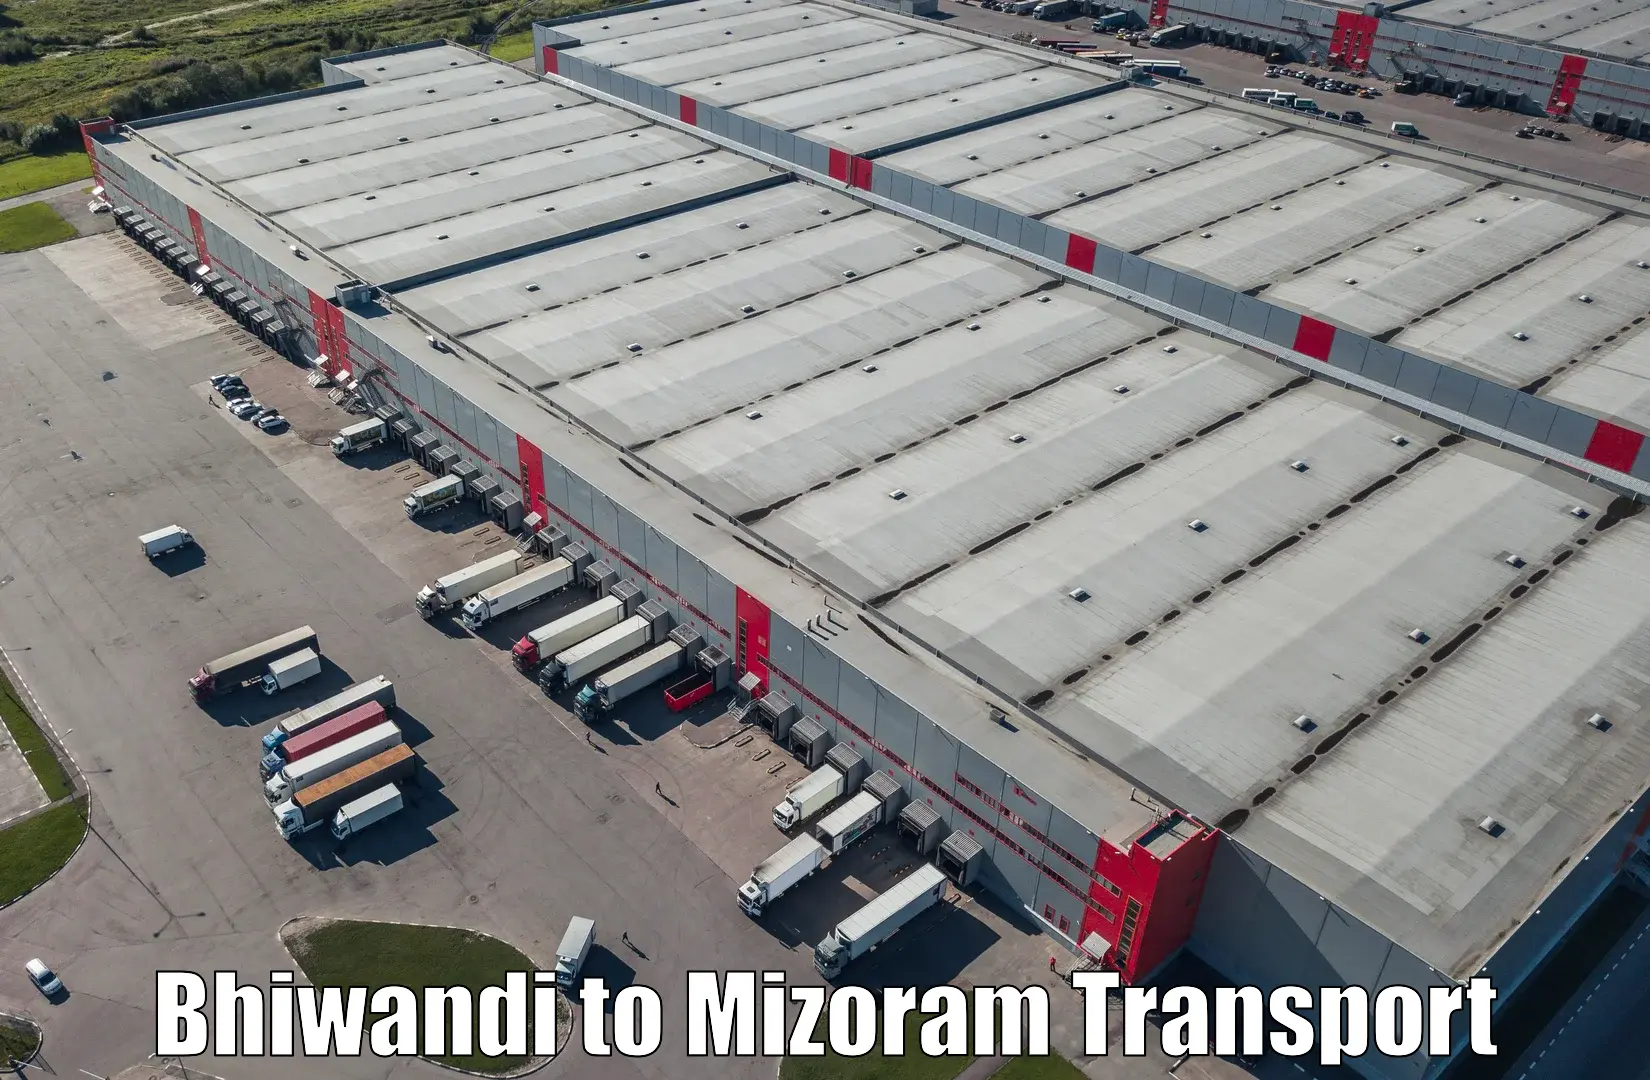 Daily transport service Bhiwandi to Kolasib